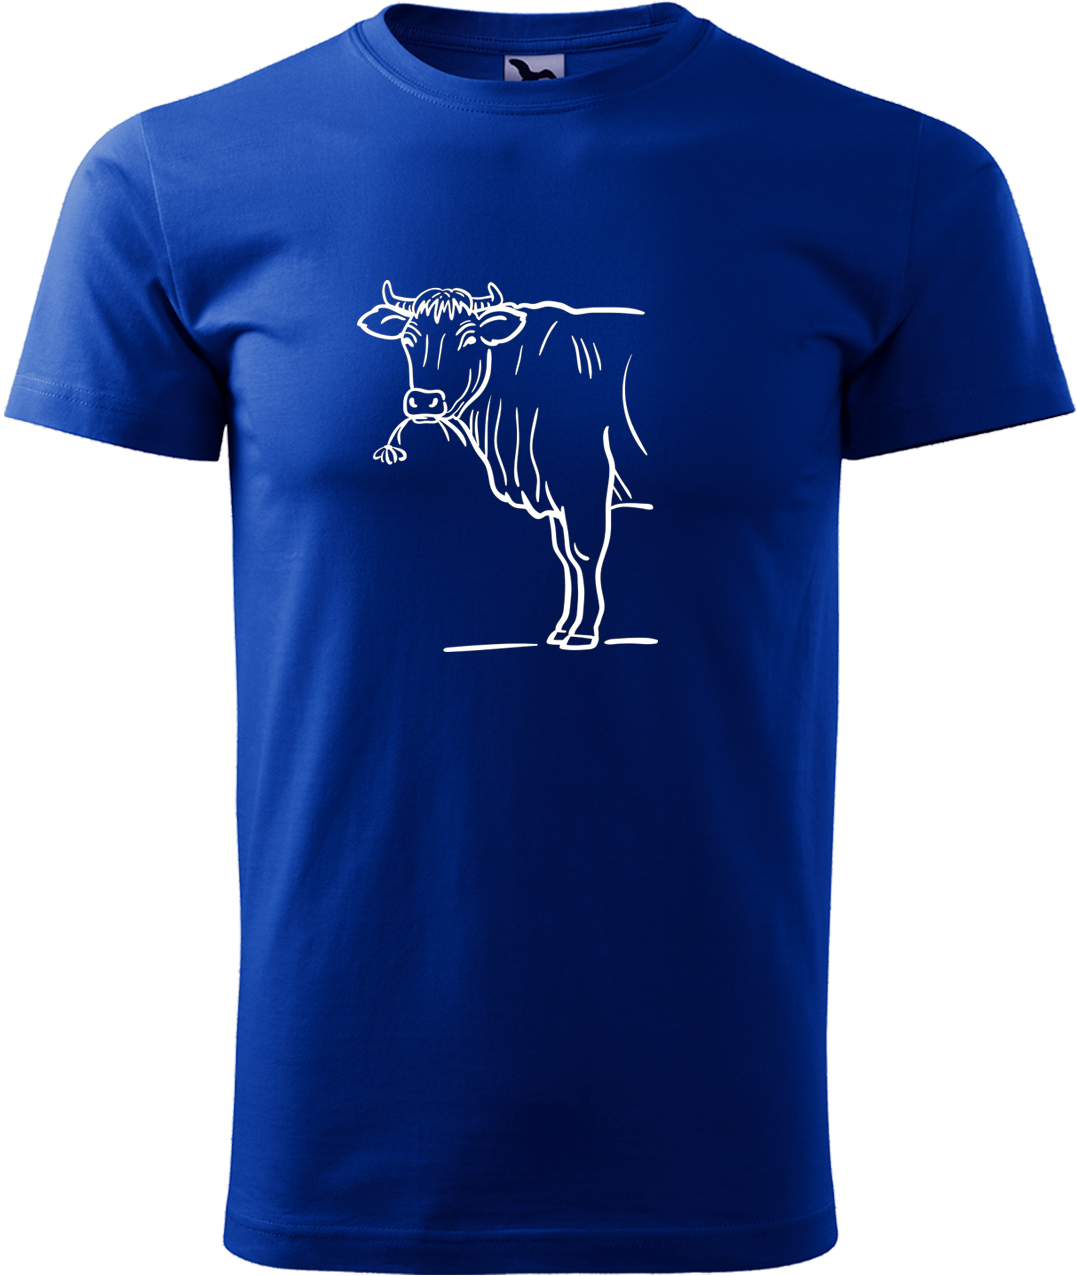 Pánské tričko s krávou - Býk Velikost: L, Barva: Královská modrá (05), Střih: pánský